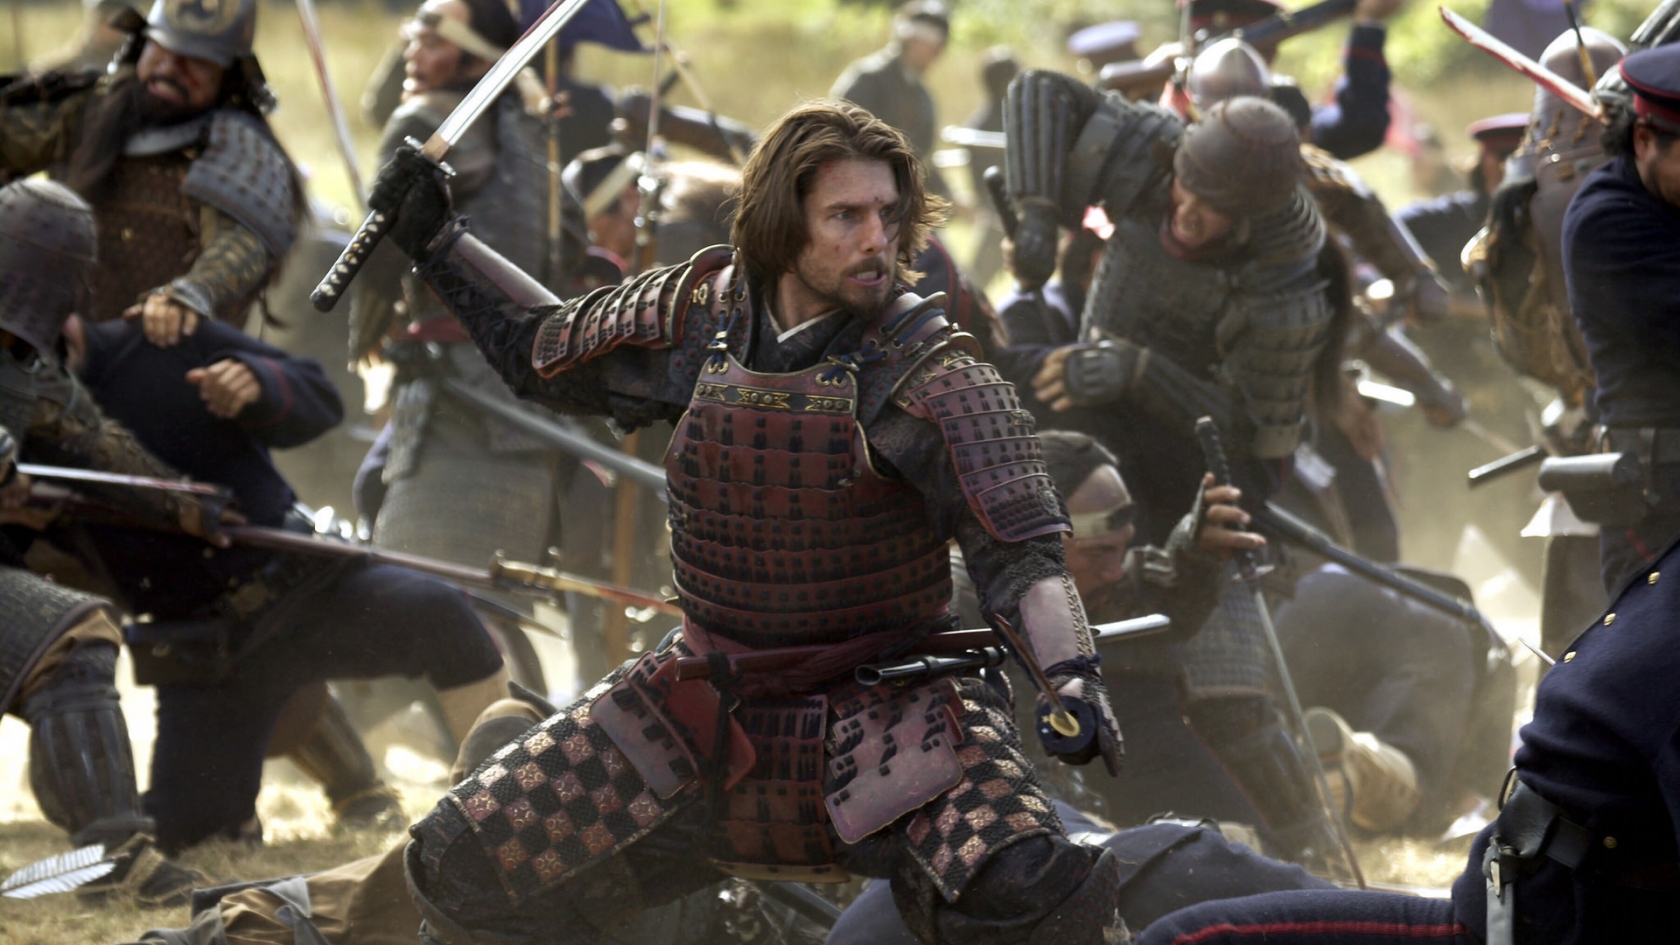 Tom Cruise The Last Samurai for 1680 x 945 HDTV resolution